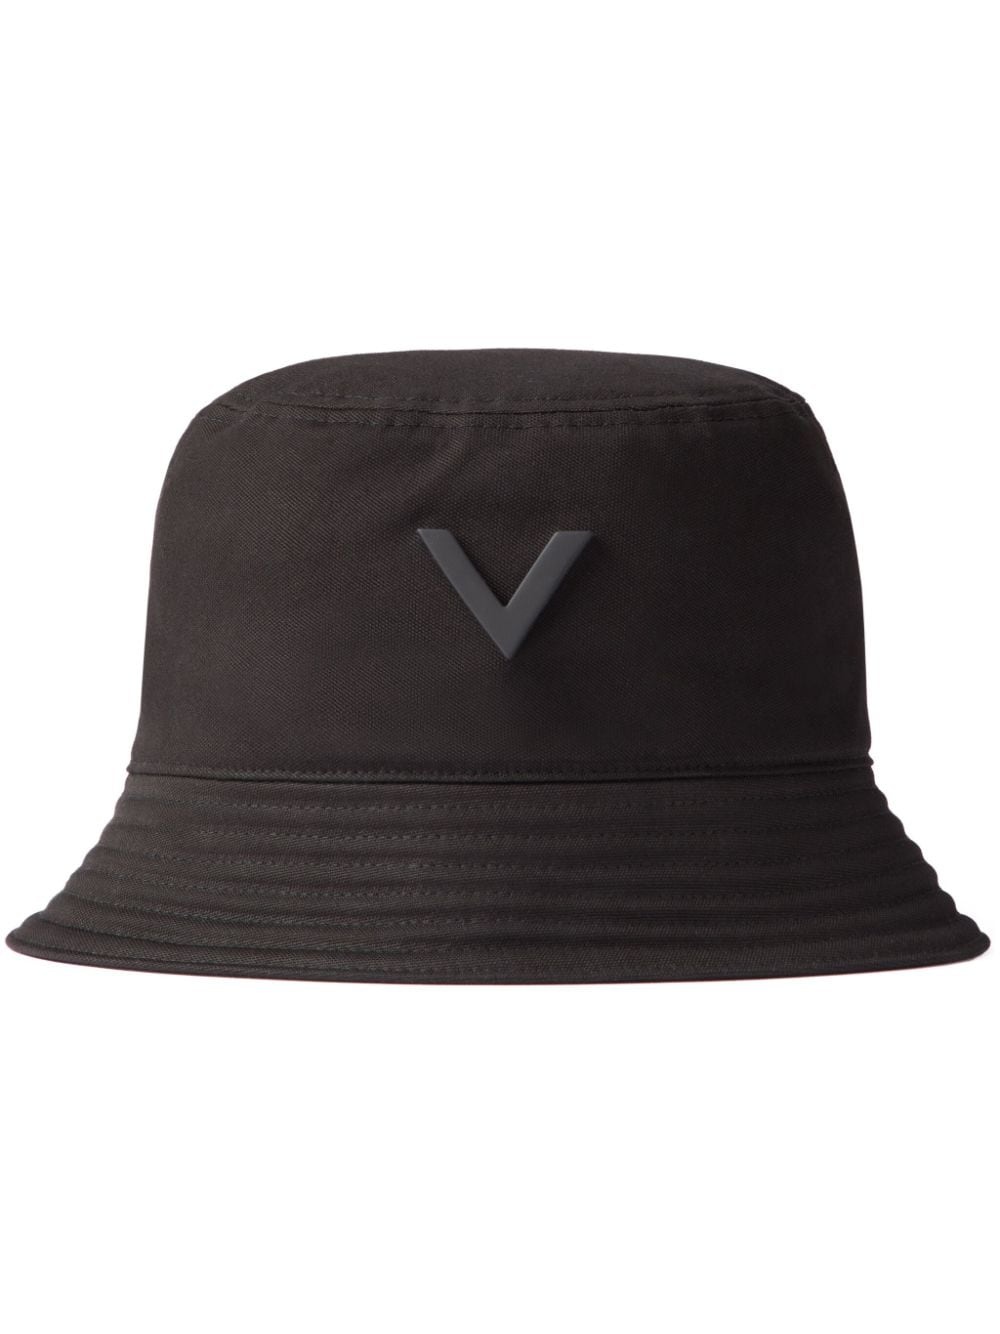 V-logo cotton bucket hat - 1